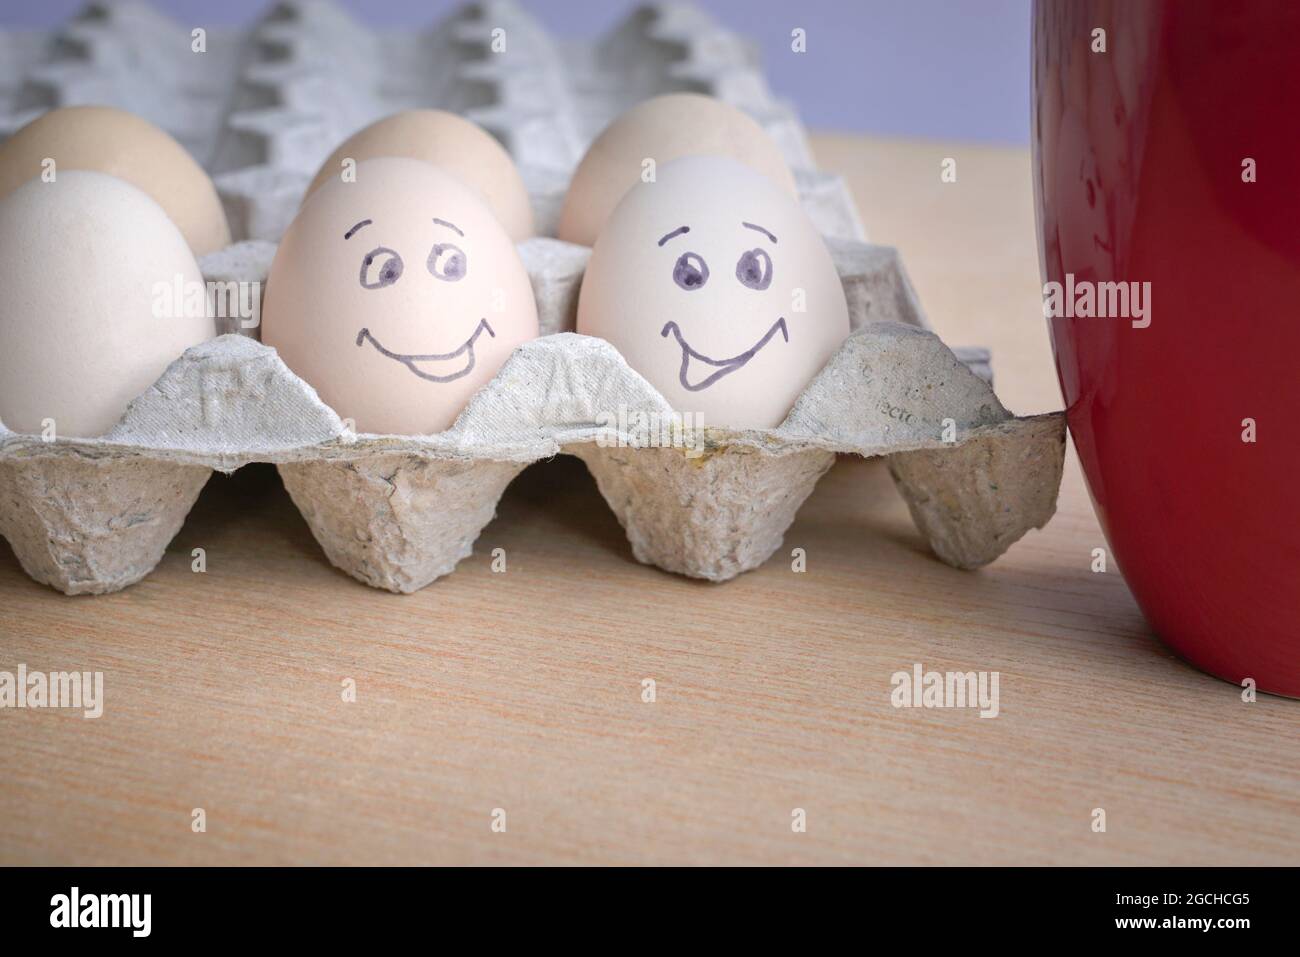 Deux œufs peints avec un visage souriant à côté d'une tasse de café rouge. Concept petit déjeuner bon matin. Banque D'Images